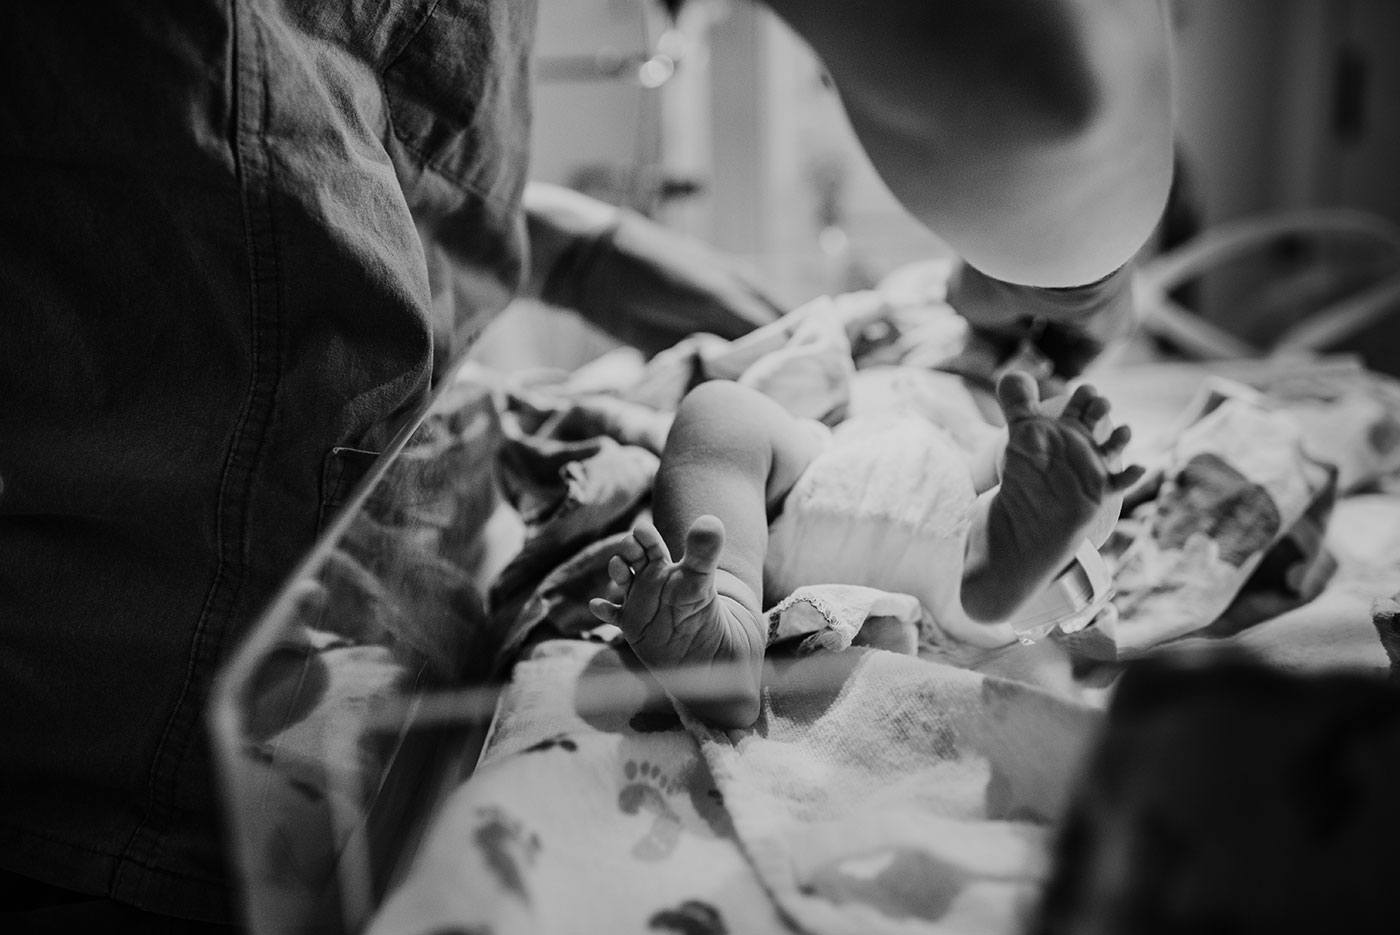 newborn baby boy's feet at Good Sam hospital in Portland